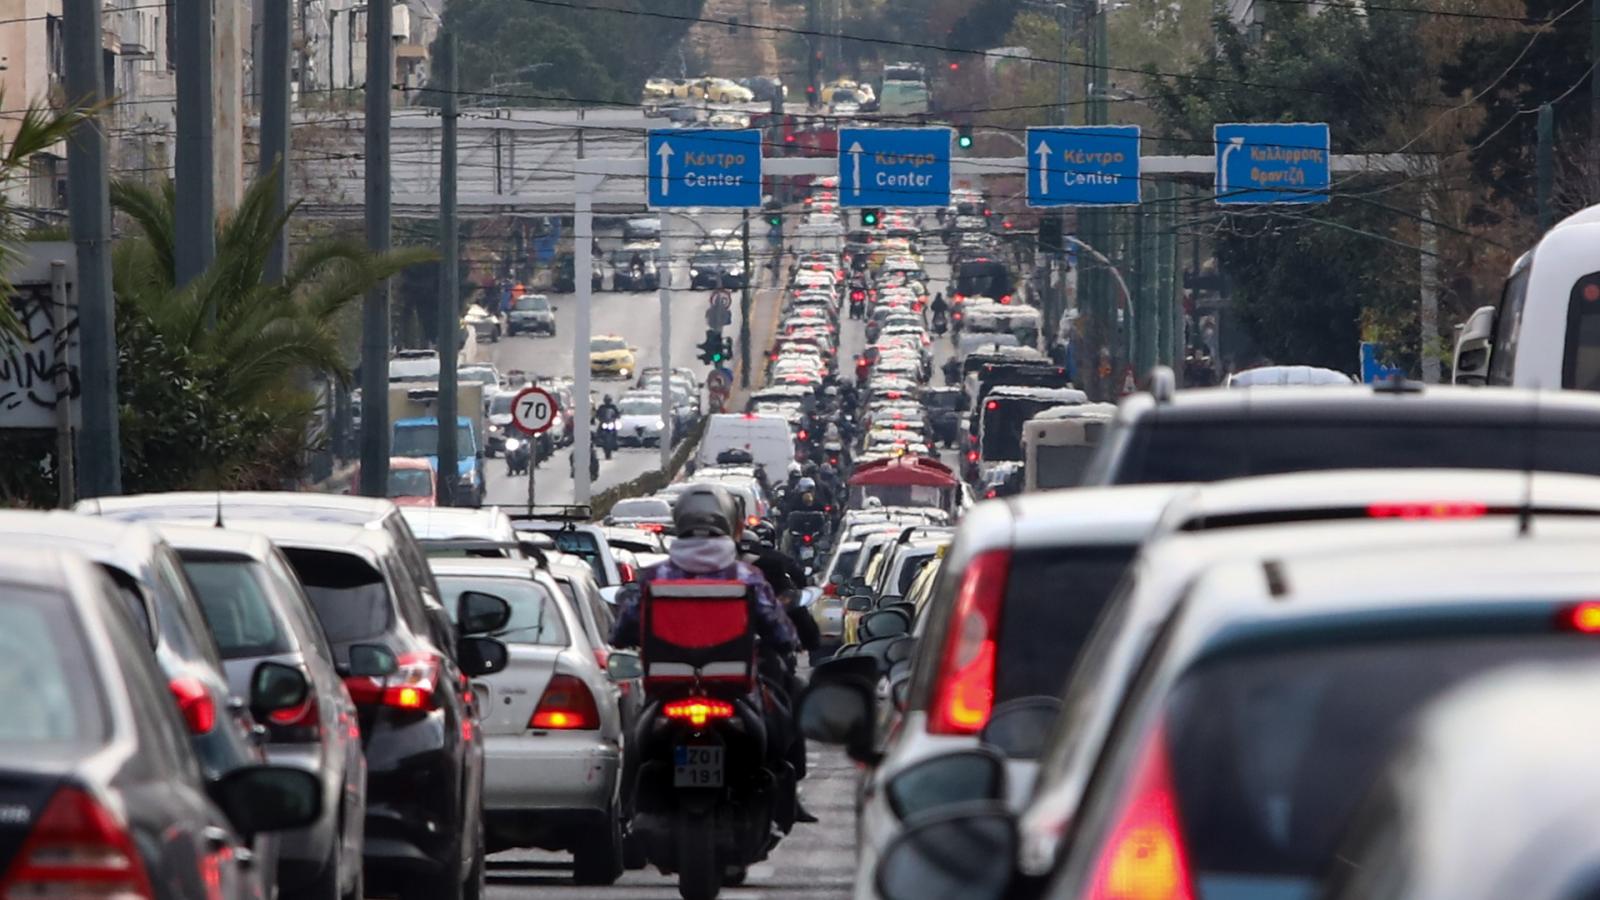 υποχρεωτική απόσυρση για τα αυτοκίνητα -τι θα συμβεί με 2,8 εκατομμύρια οχήματα στην ελλάδα